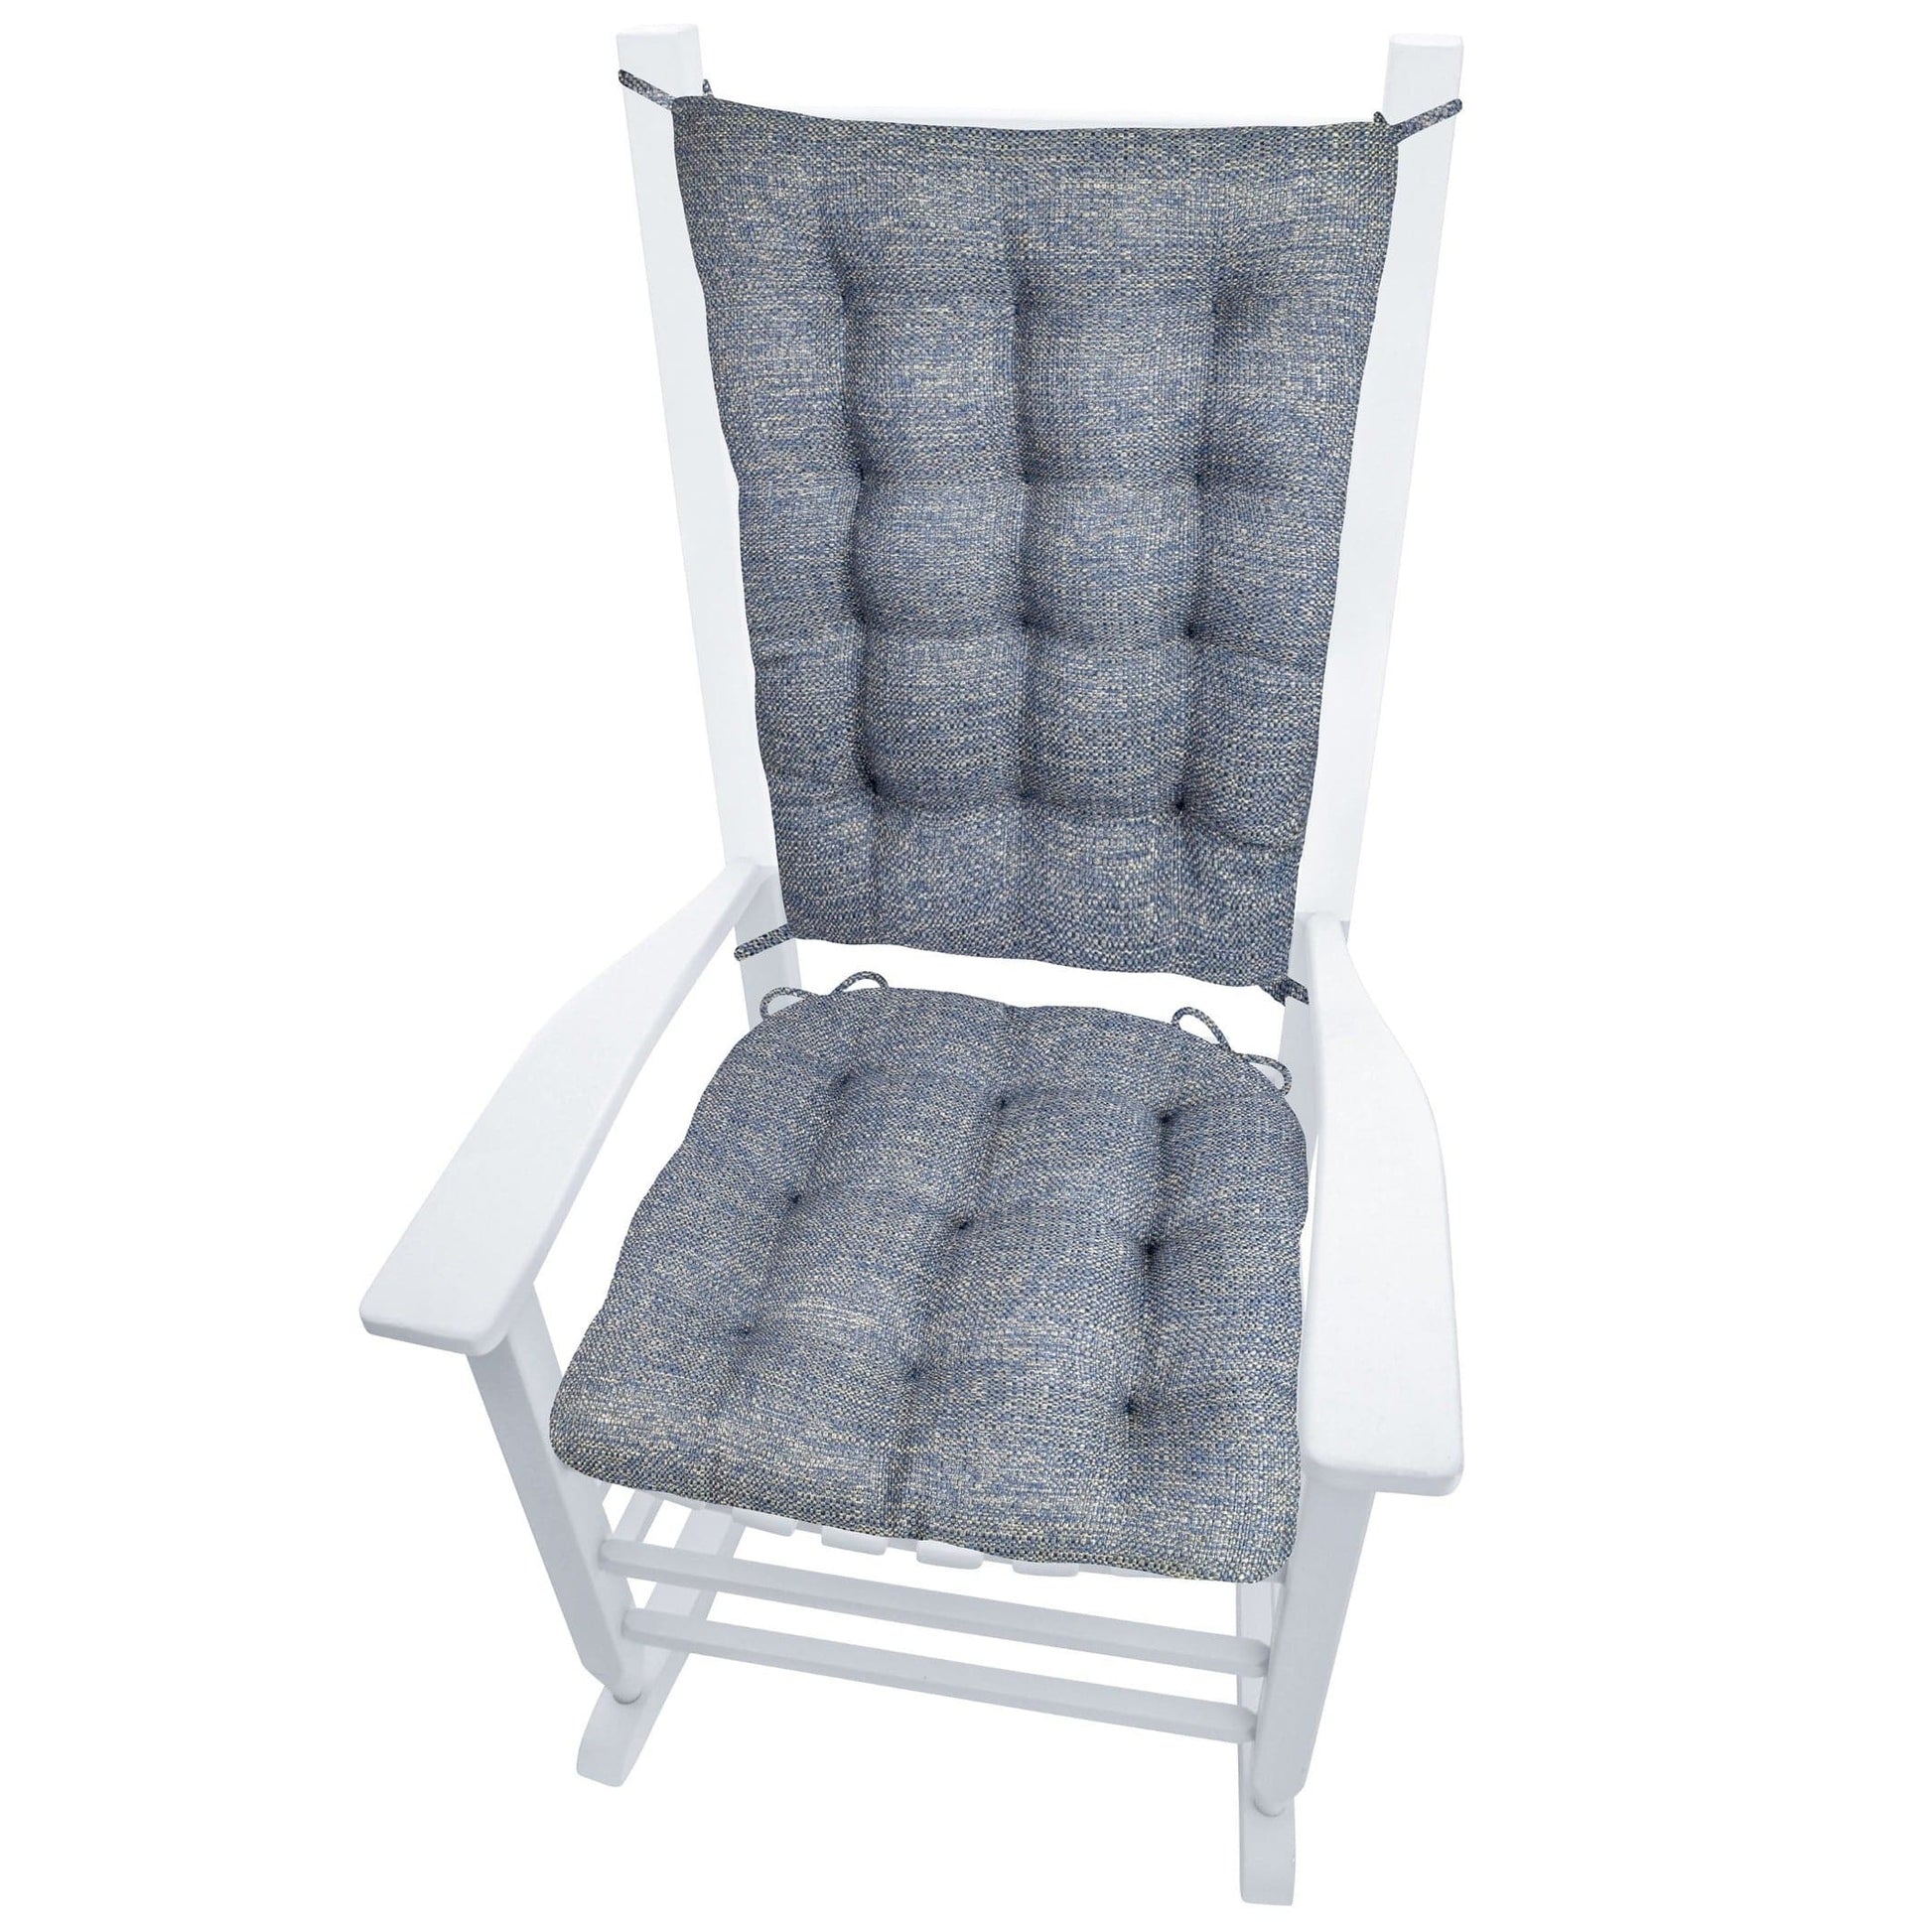 Brisbane Colonial Blue Rocking Chair Cushions - Latex Foam - Barnett Home Décor - Blue - Tweed